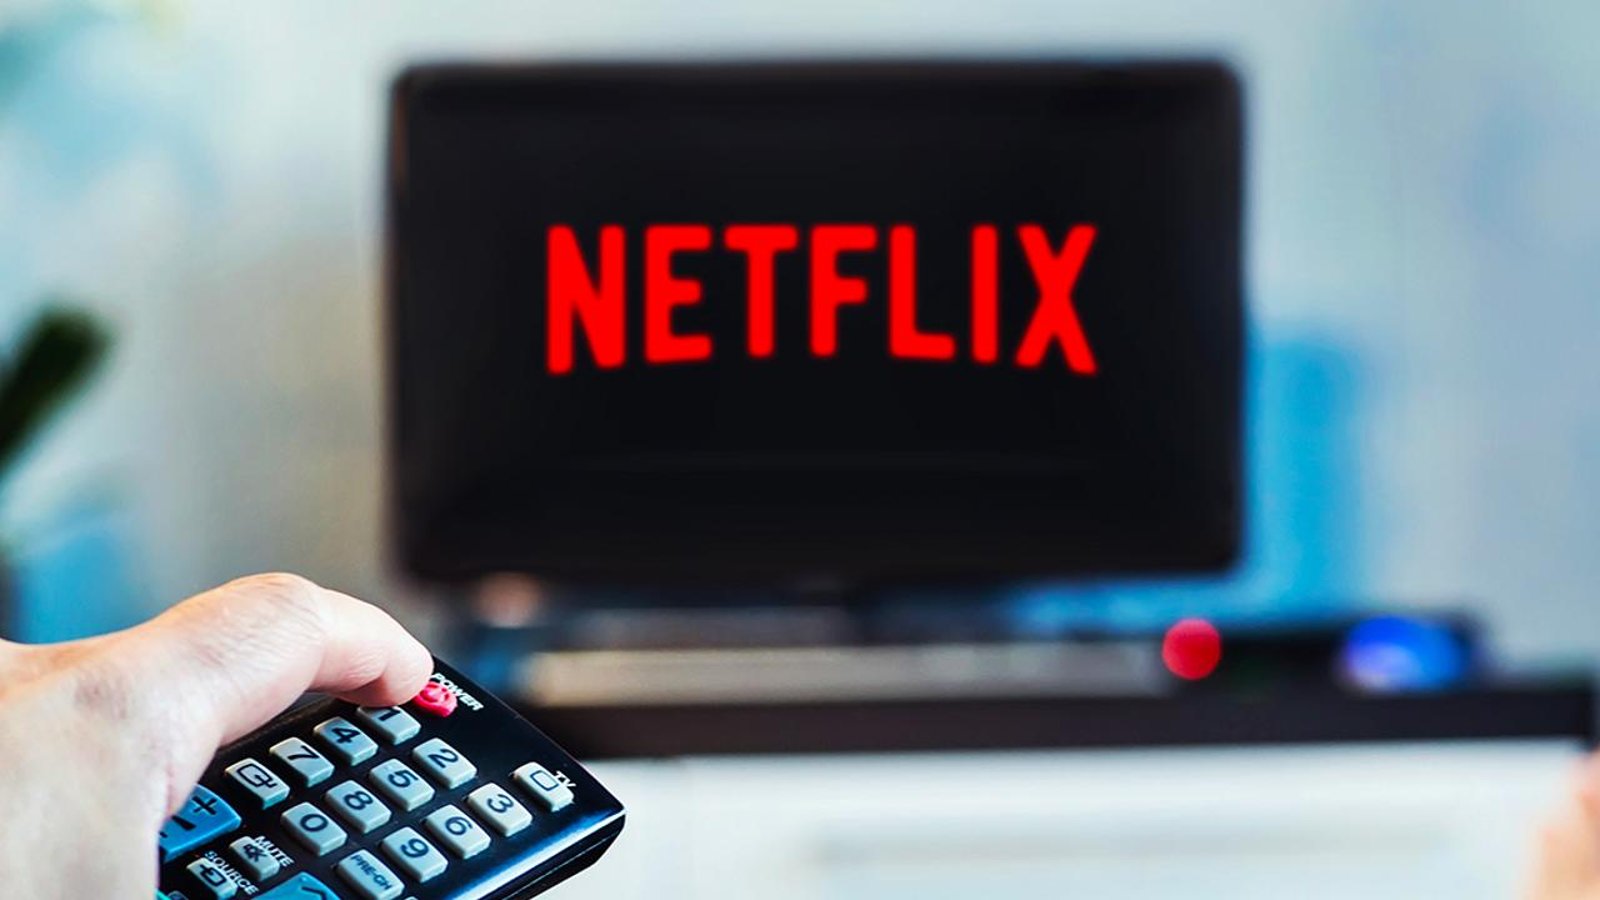 Les Québécois se désabonnent massivement de Netflix.